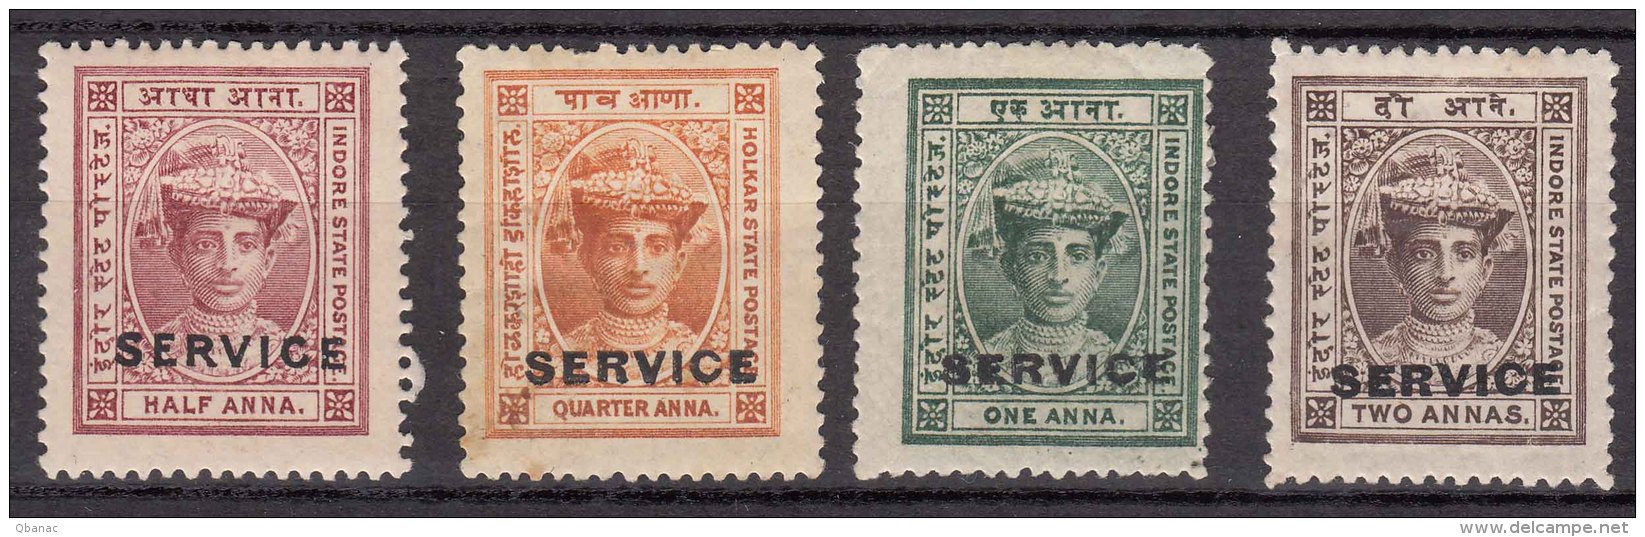 India Indore (Holkar) State Stamps - Holkar